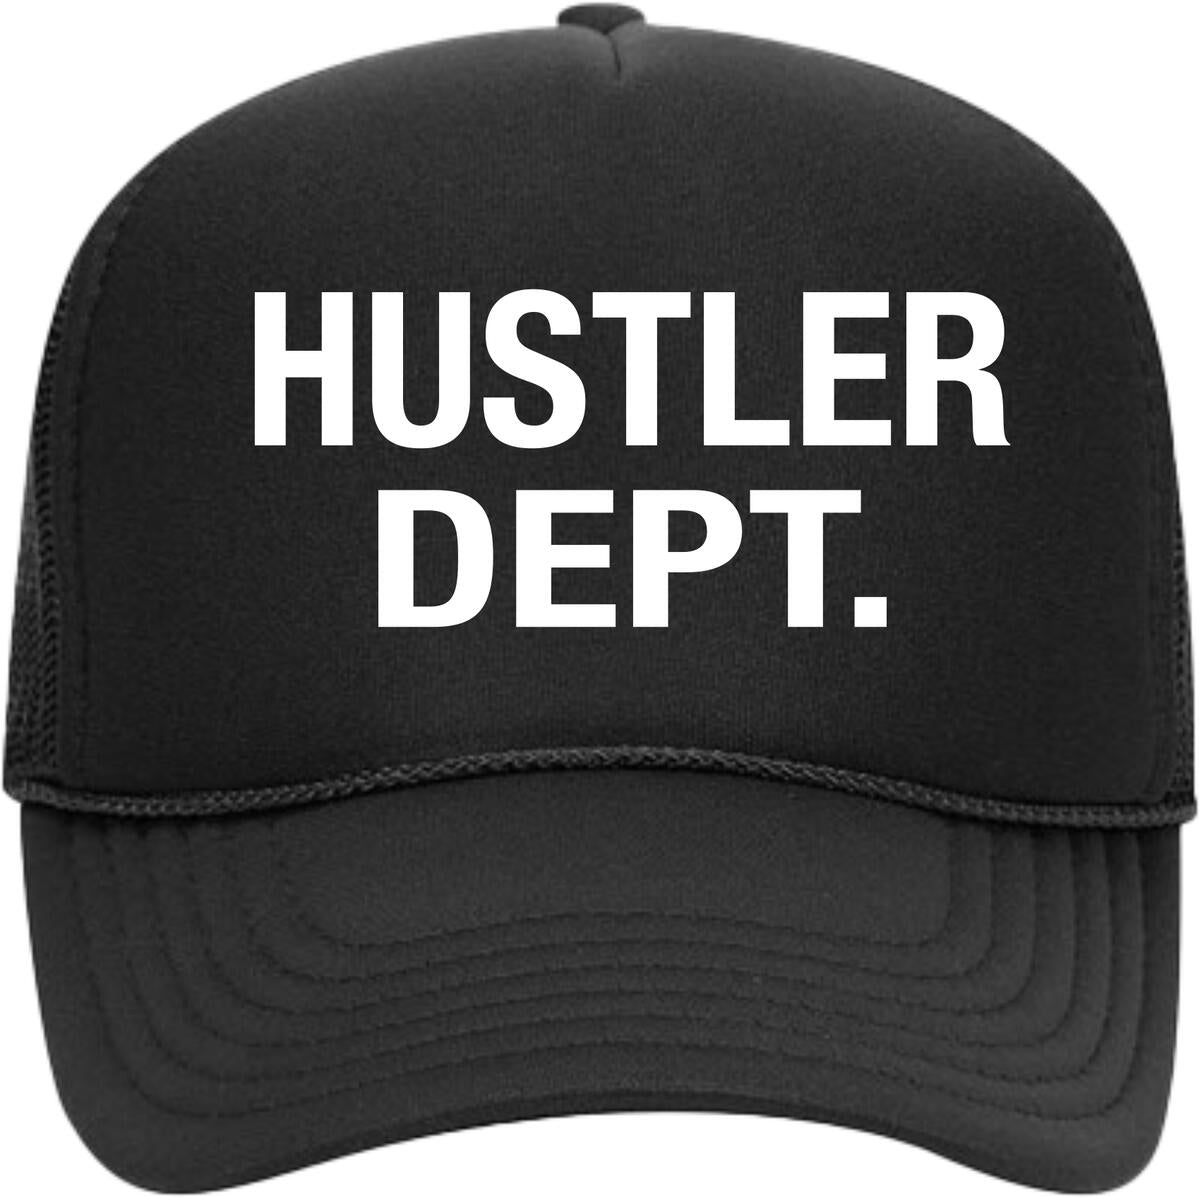 Point Blank - Hustler Dept. Trucker Hat (Black)